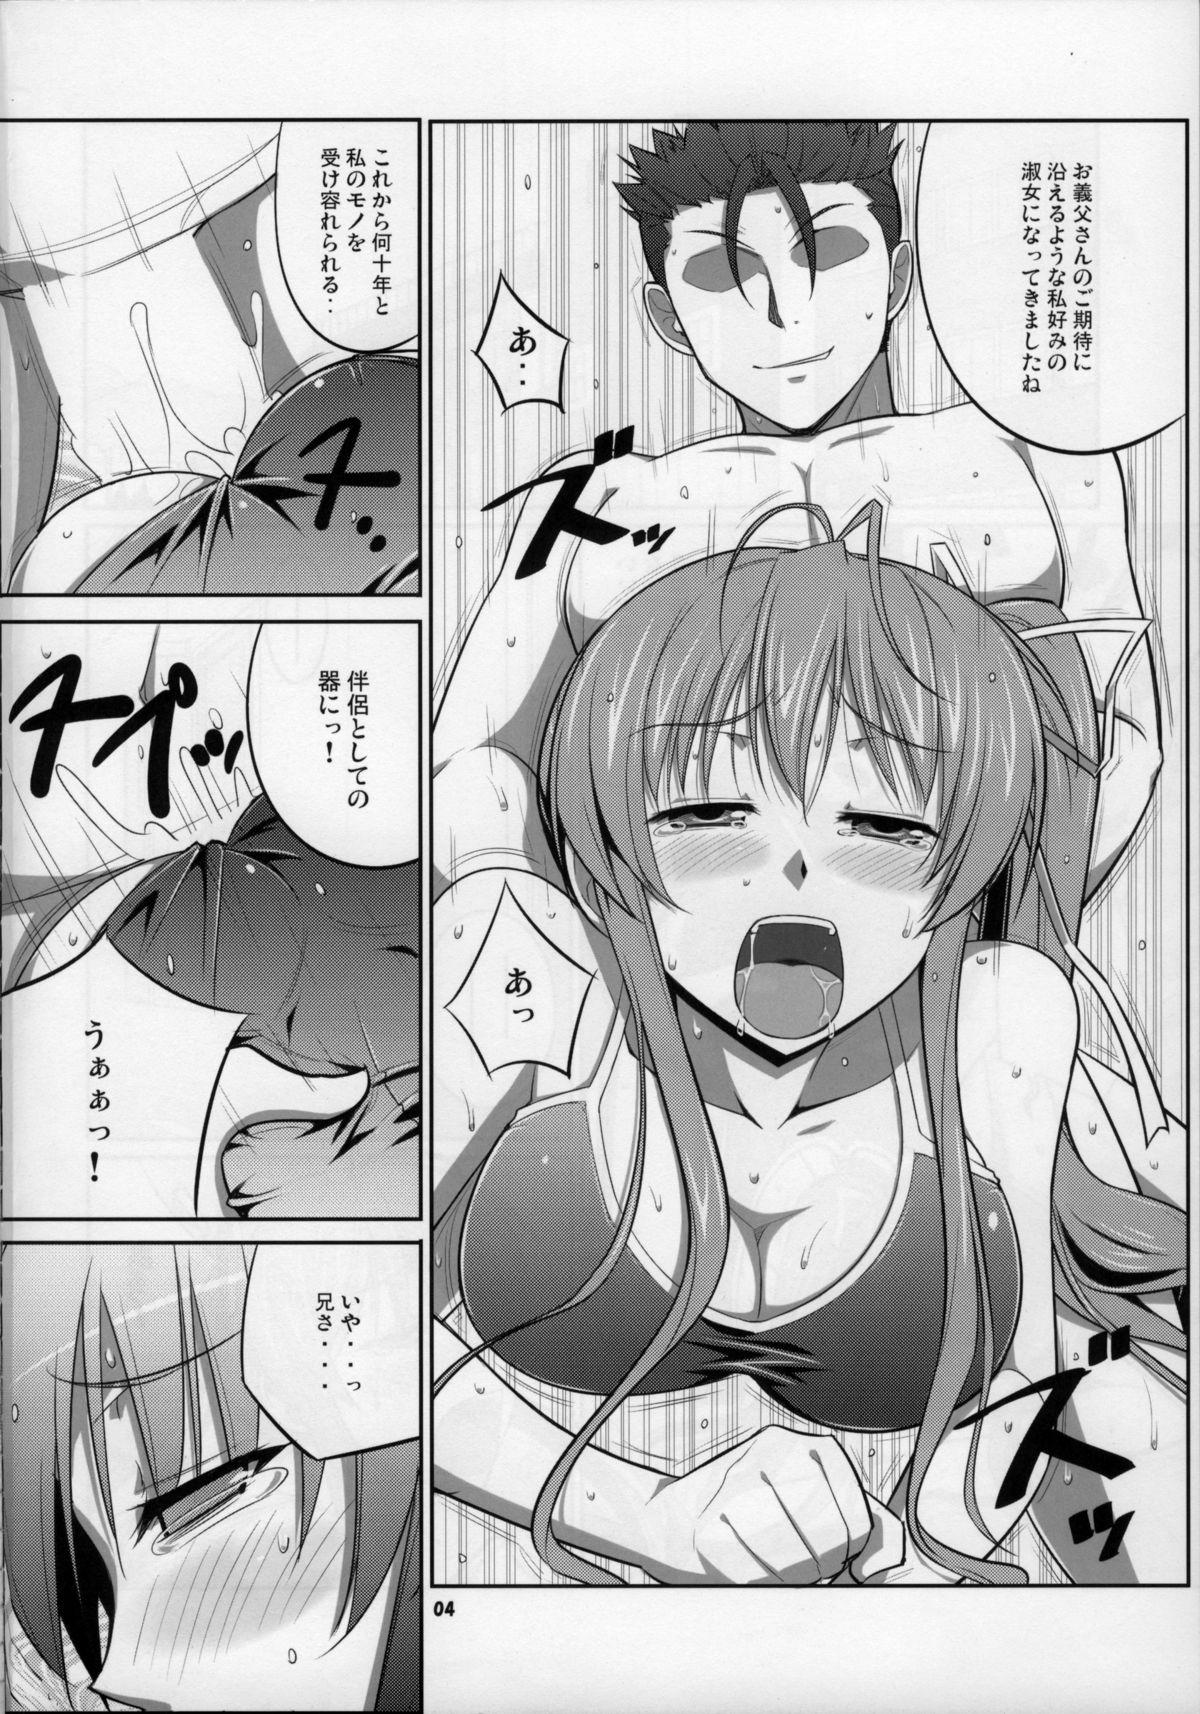 Olderwoman SHE BLOOMS AT NIGHT - Akaneiro ni somaru saka Masterbate - Page 4